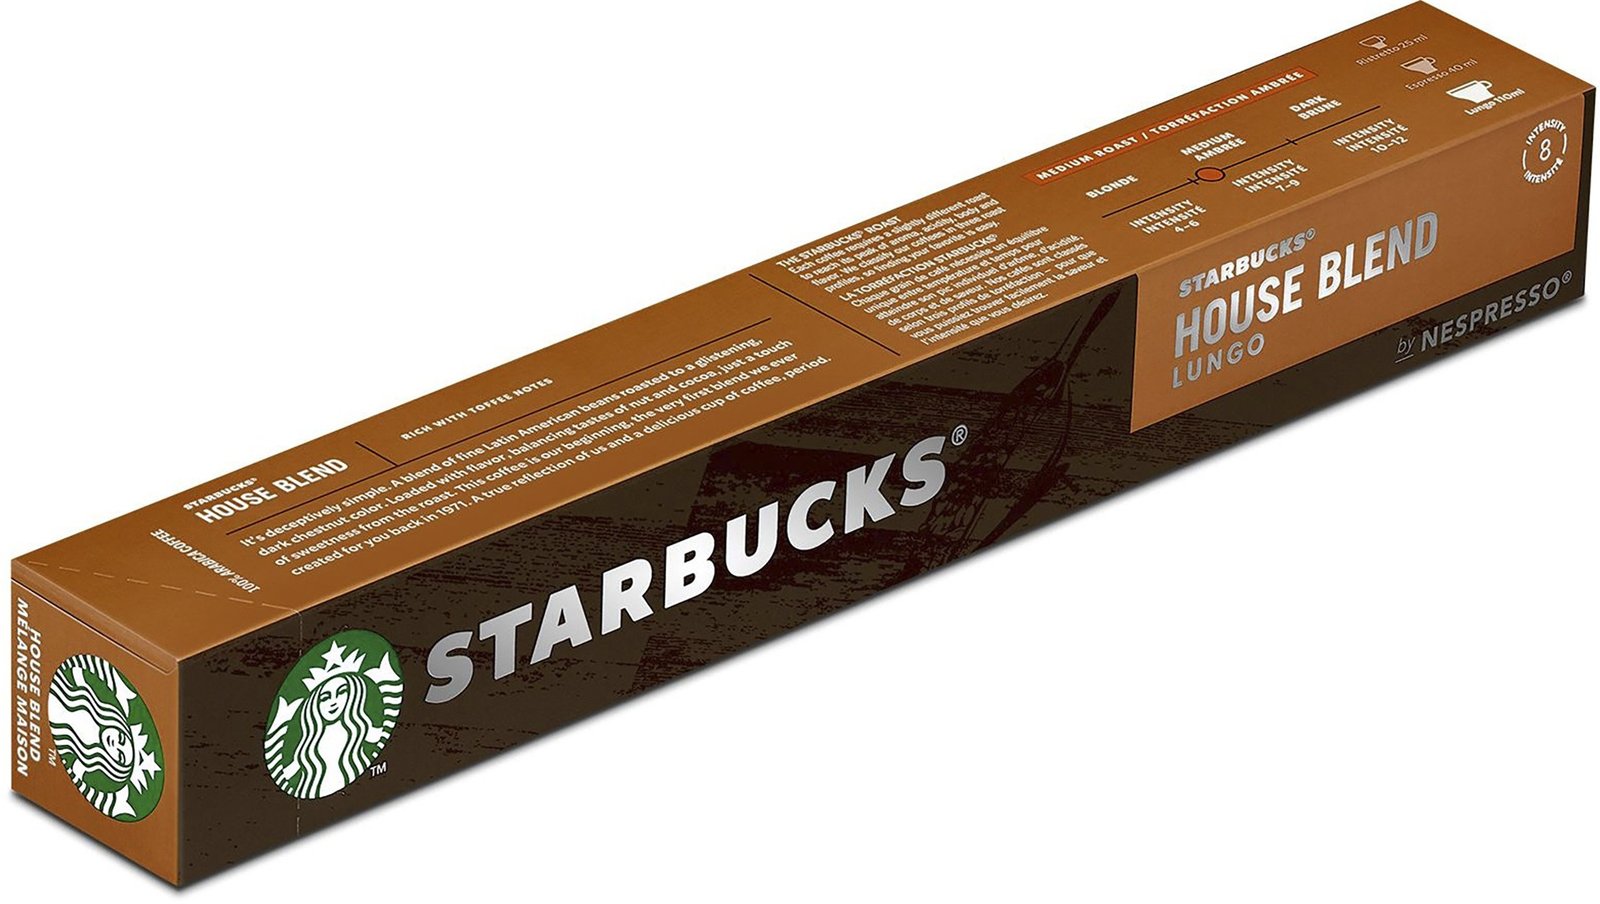 STARBUCKS Starbucks by Nespresso House Blend 10 st